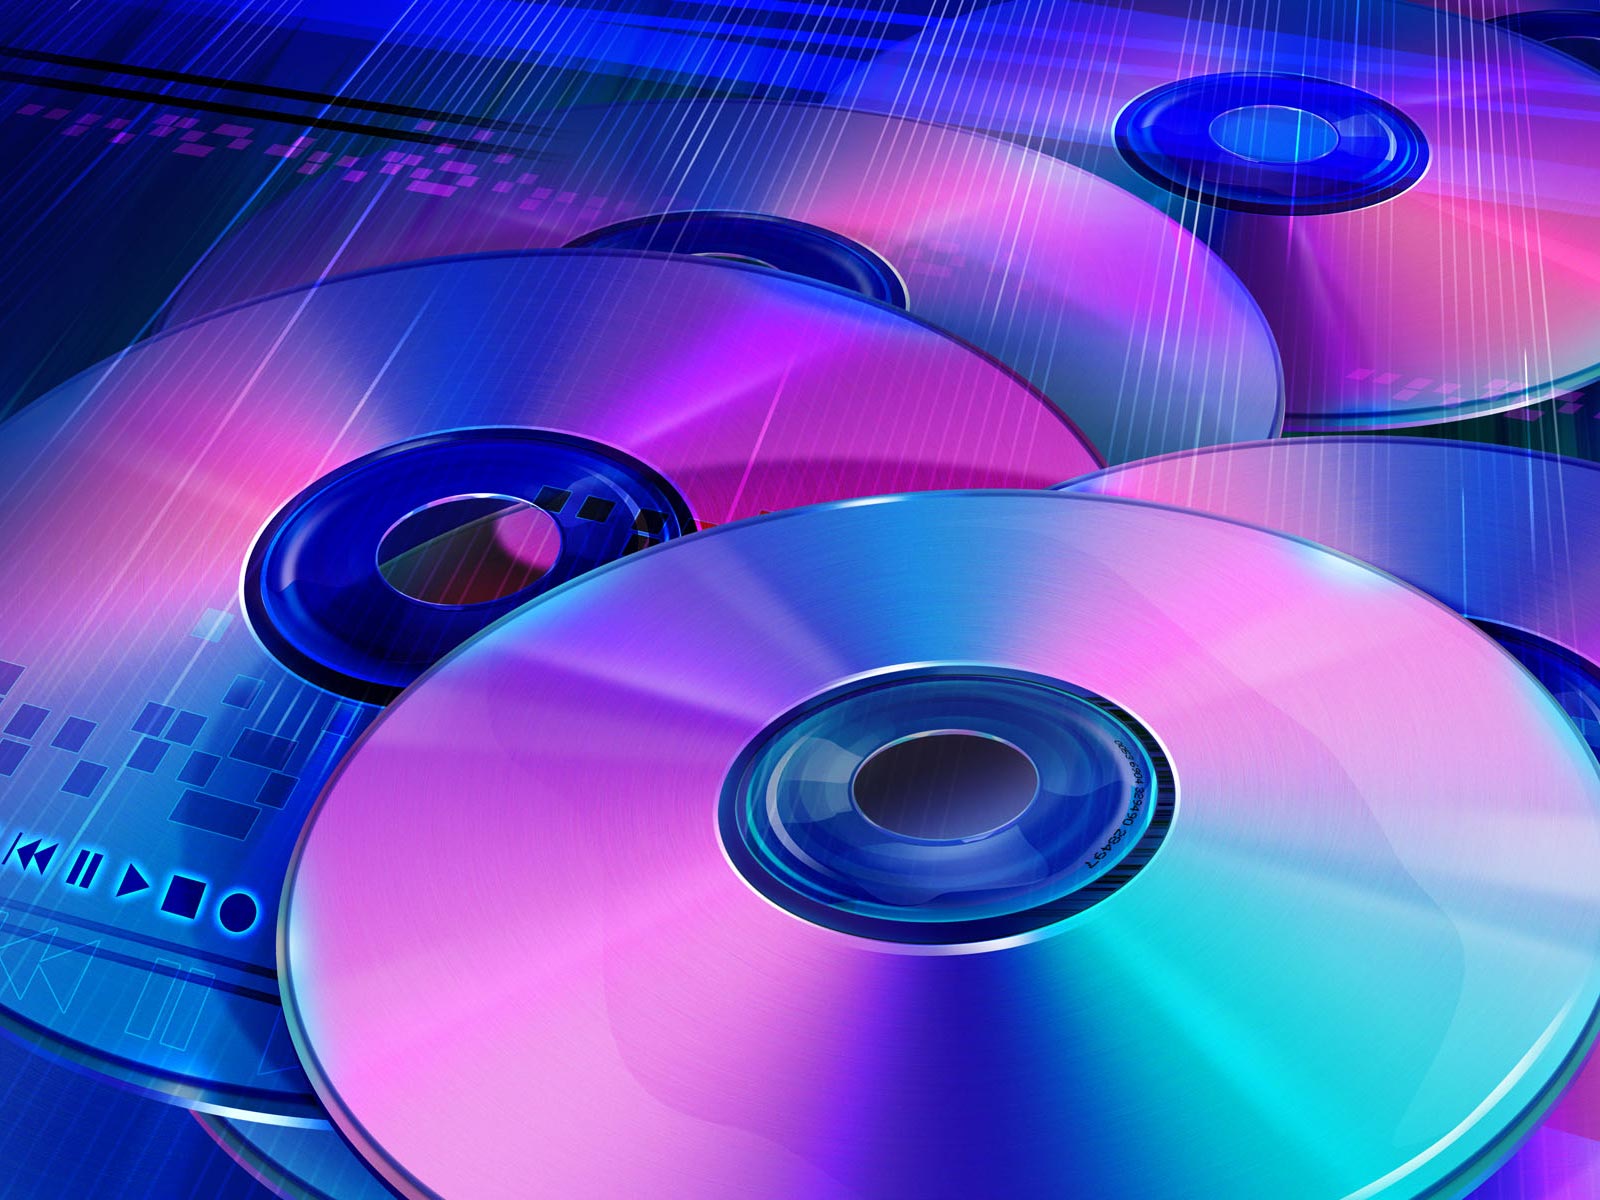 Kauft ihr noch CDs und DVDs/Blu-rays?